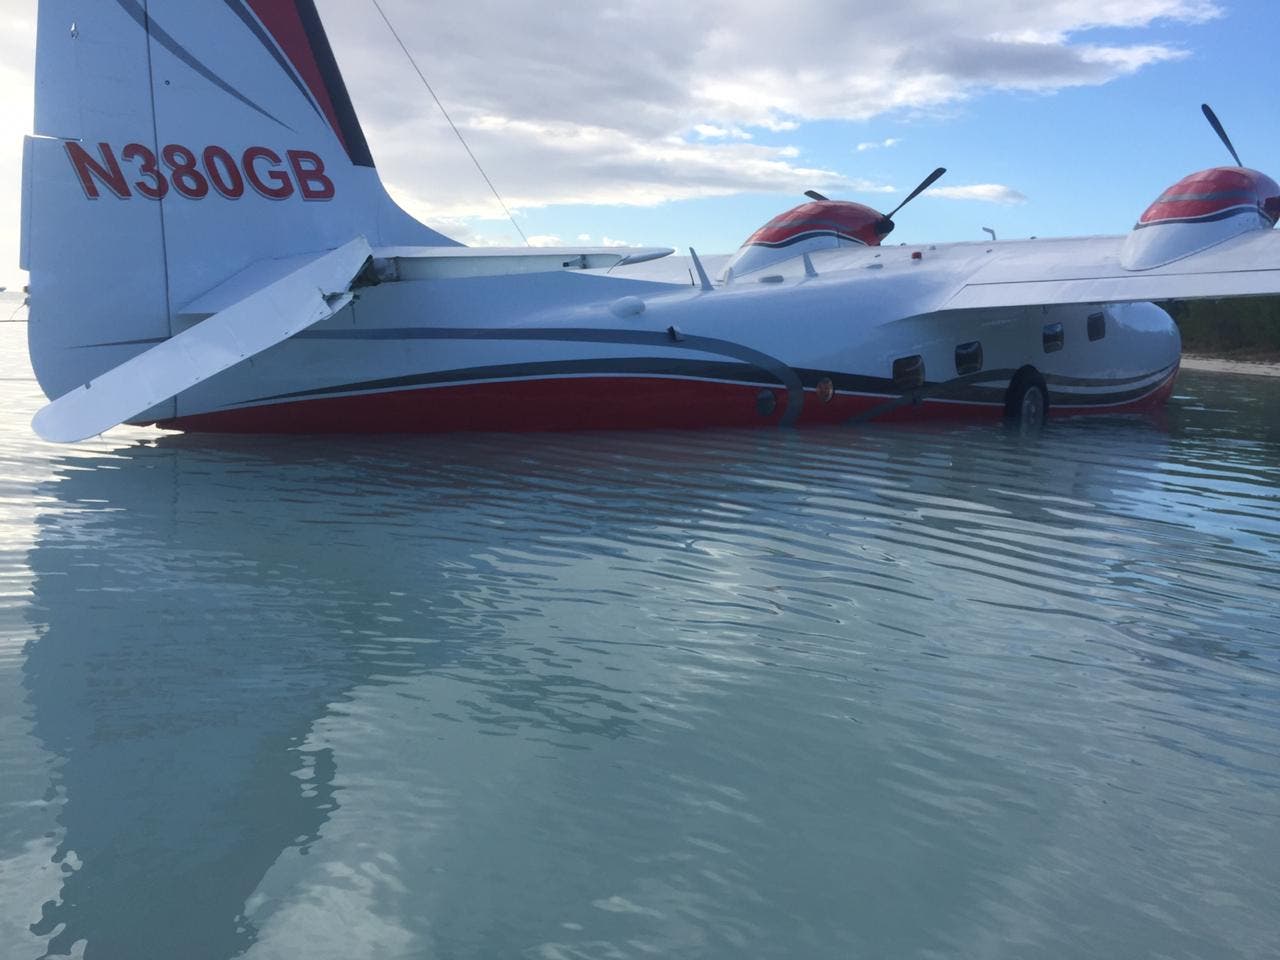 Se accidenta un hidroplano al despegar en playa de Bávaro; ocupantes salen ilesos